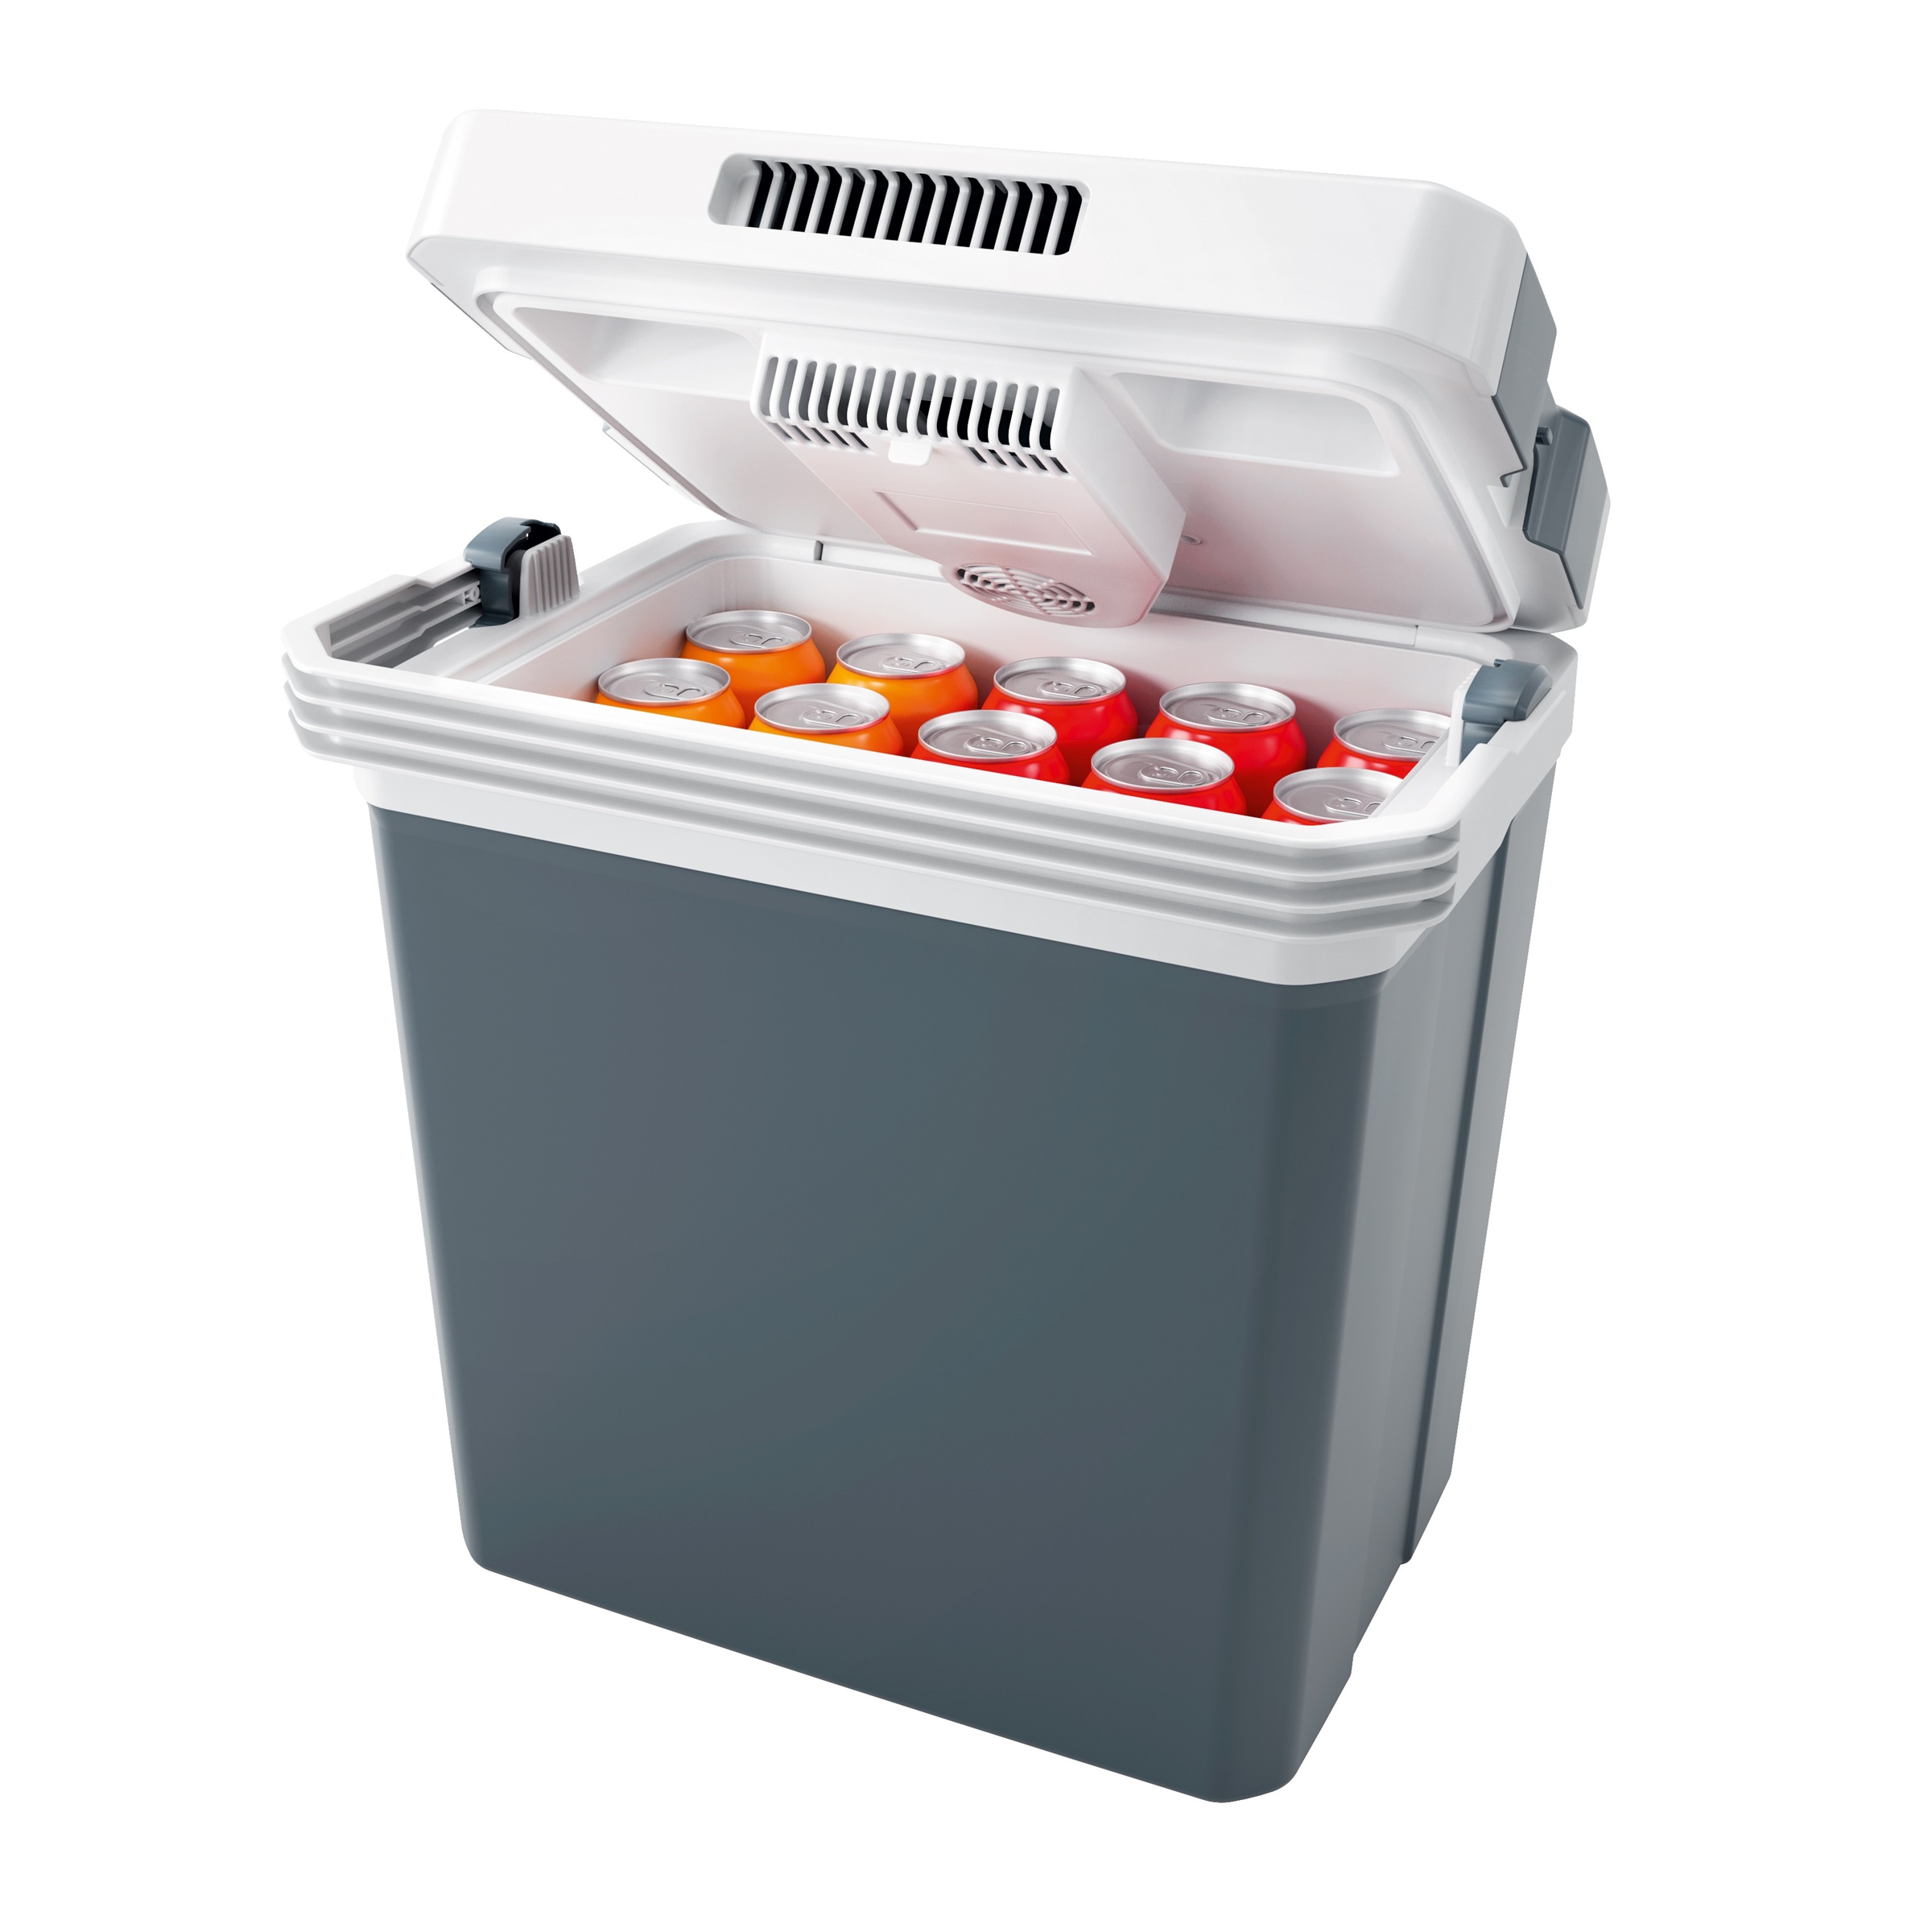 Kühlbox / Warmhaltebehälter, 24 Liter, 12/230 Volt - Kühlbox mit Heiz-/ Warmahaltefunktion (Heizbox)